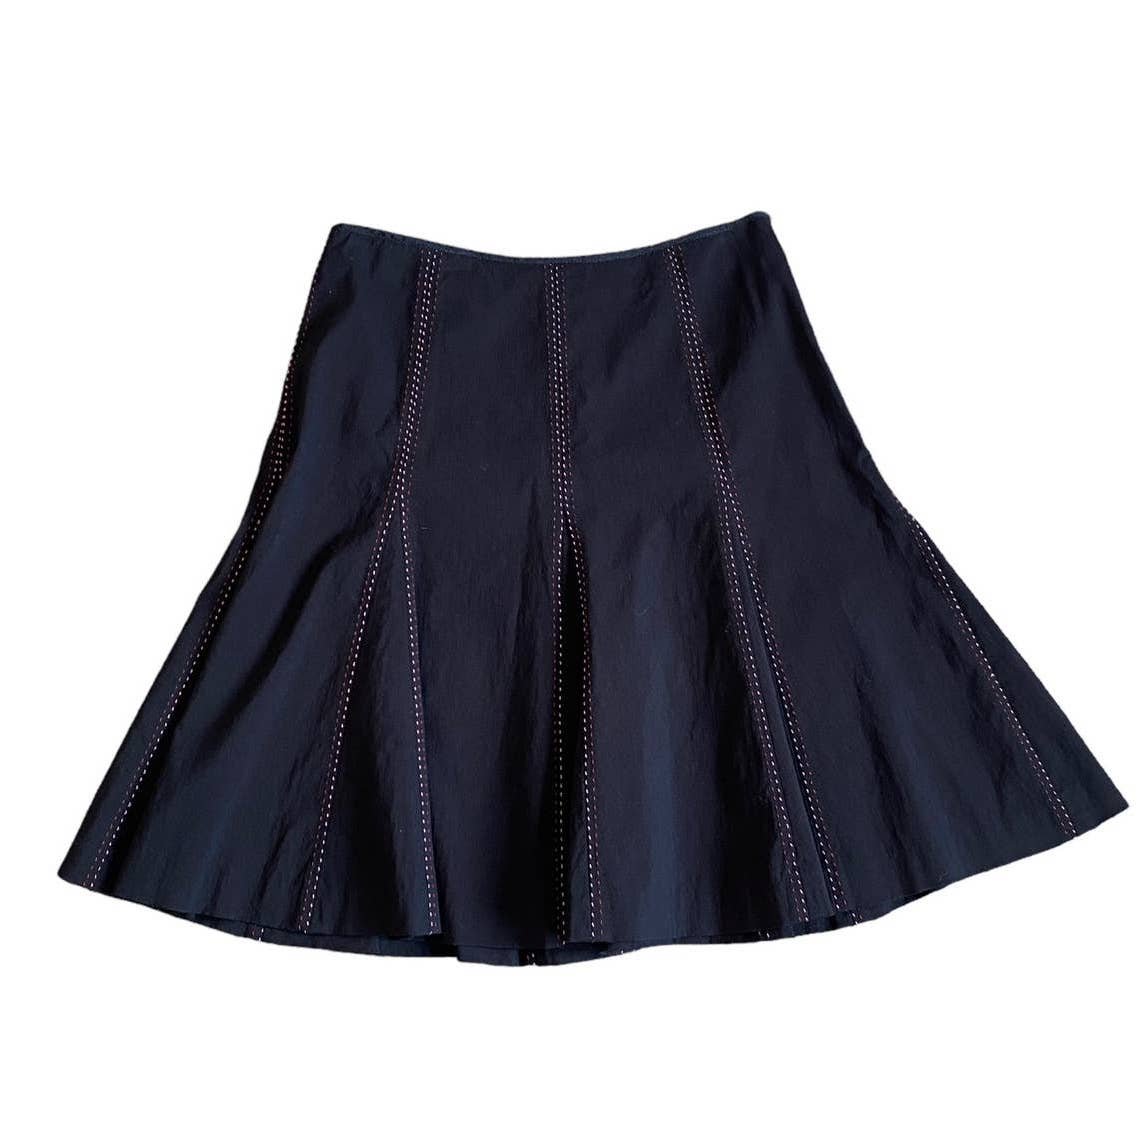 Custom Antrho Elevenses Black Gore Flare Skirt Size 4 Anthropologie FFkNt3d5R well sale